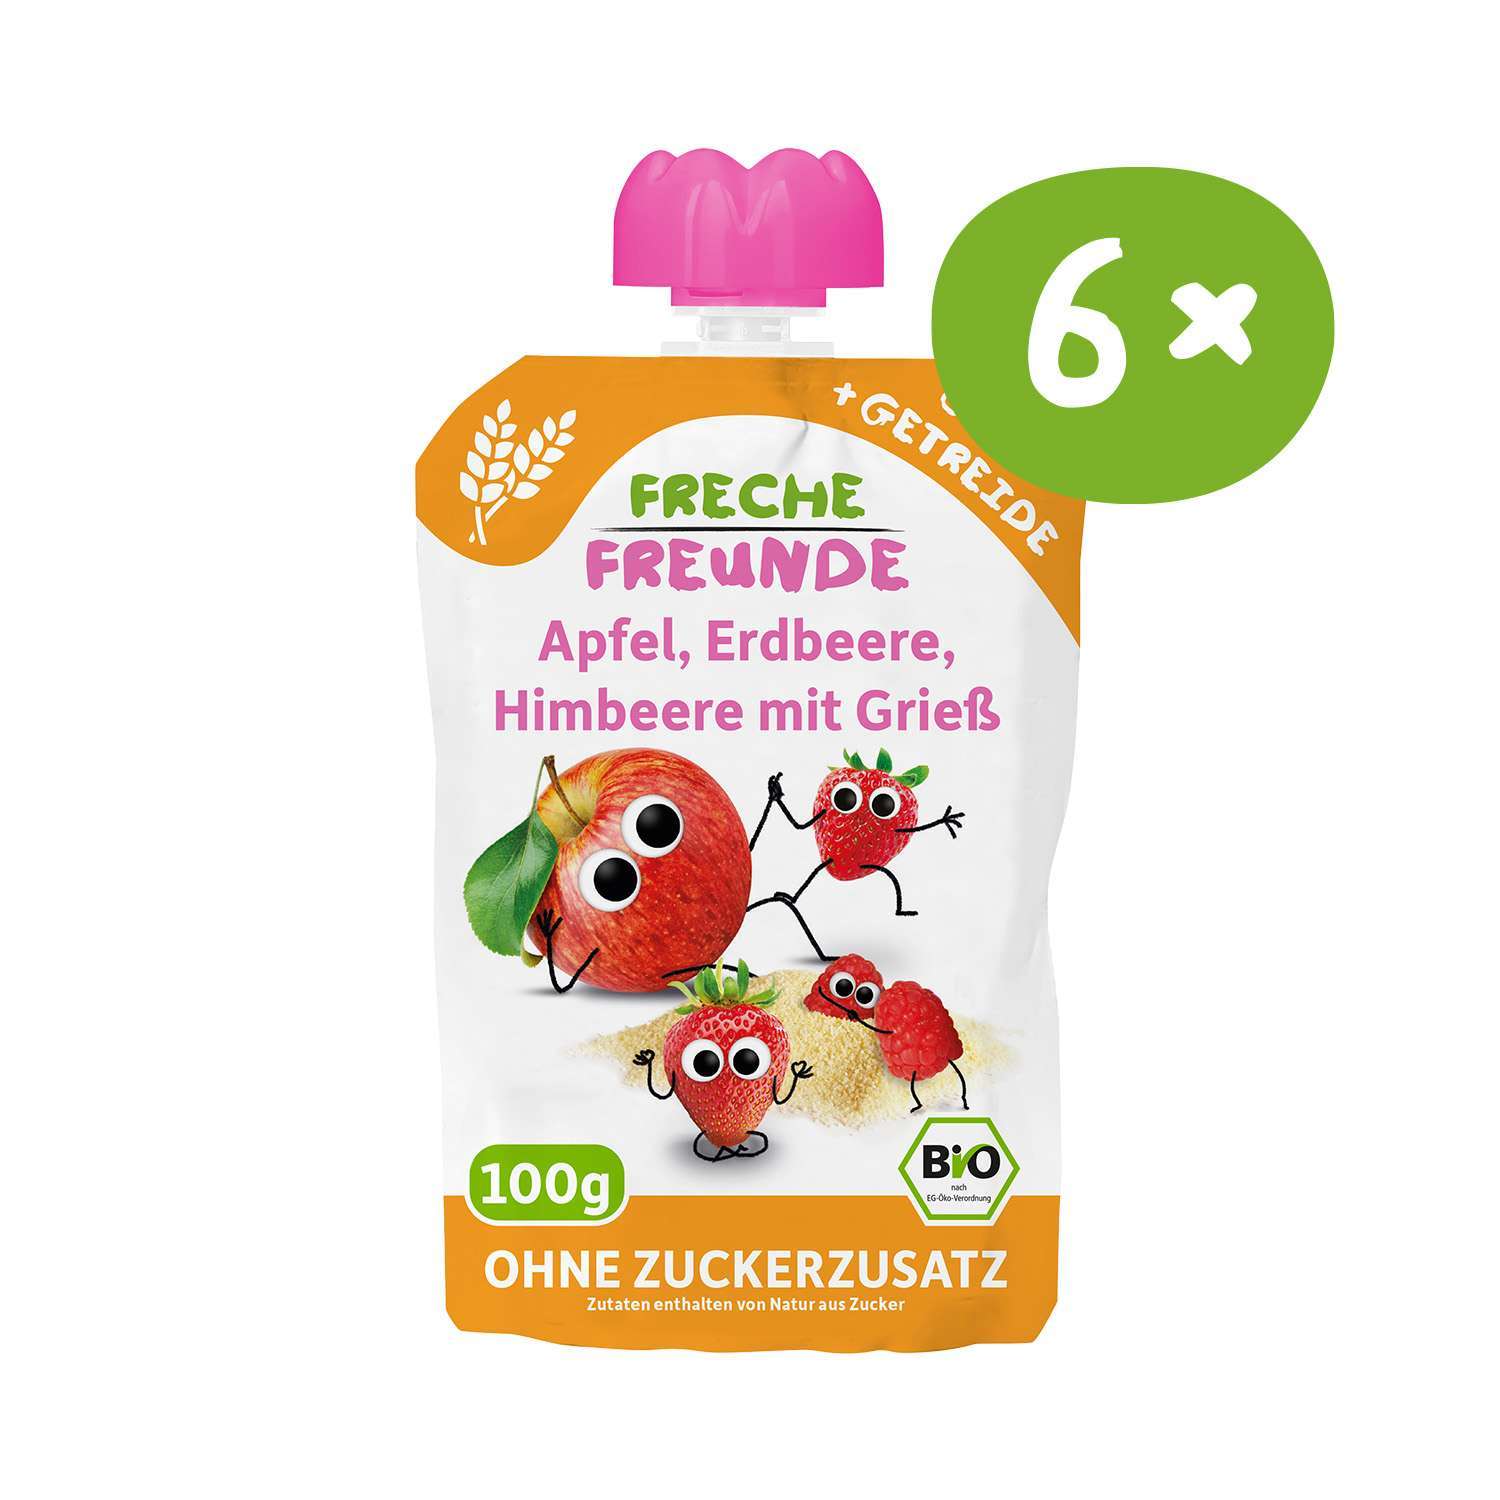 Quetschie_Apfel-Erdbeere-Himbeere-Grieß-stoerer